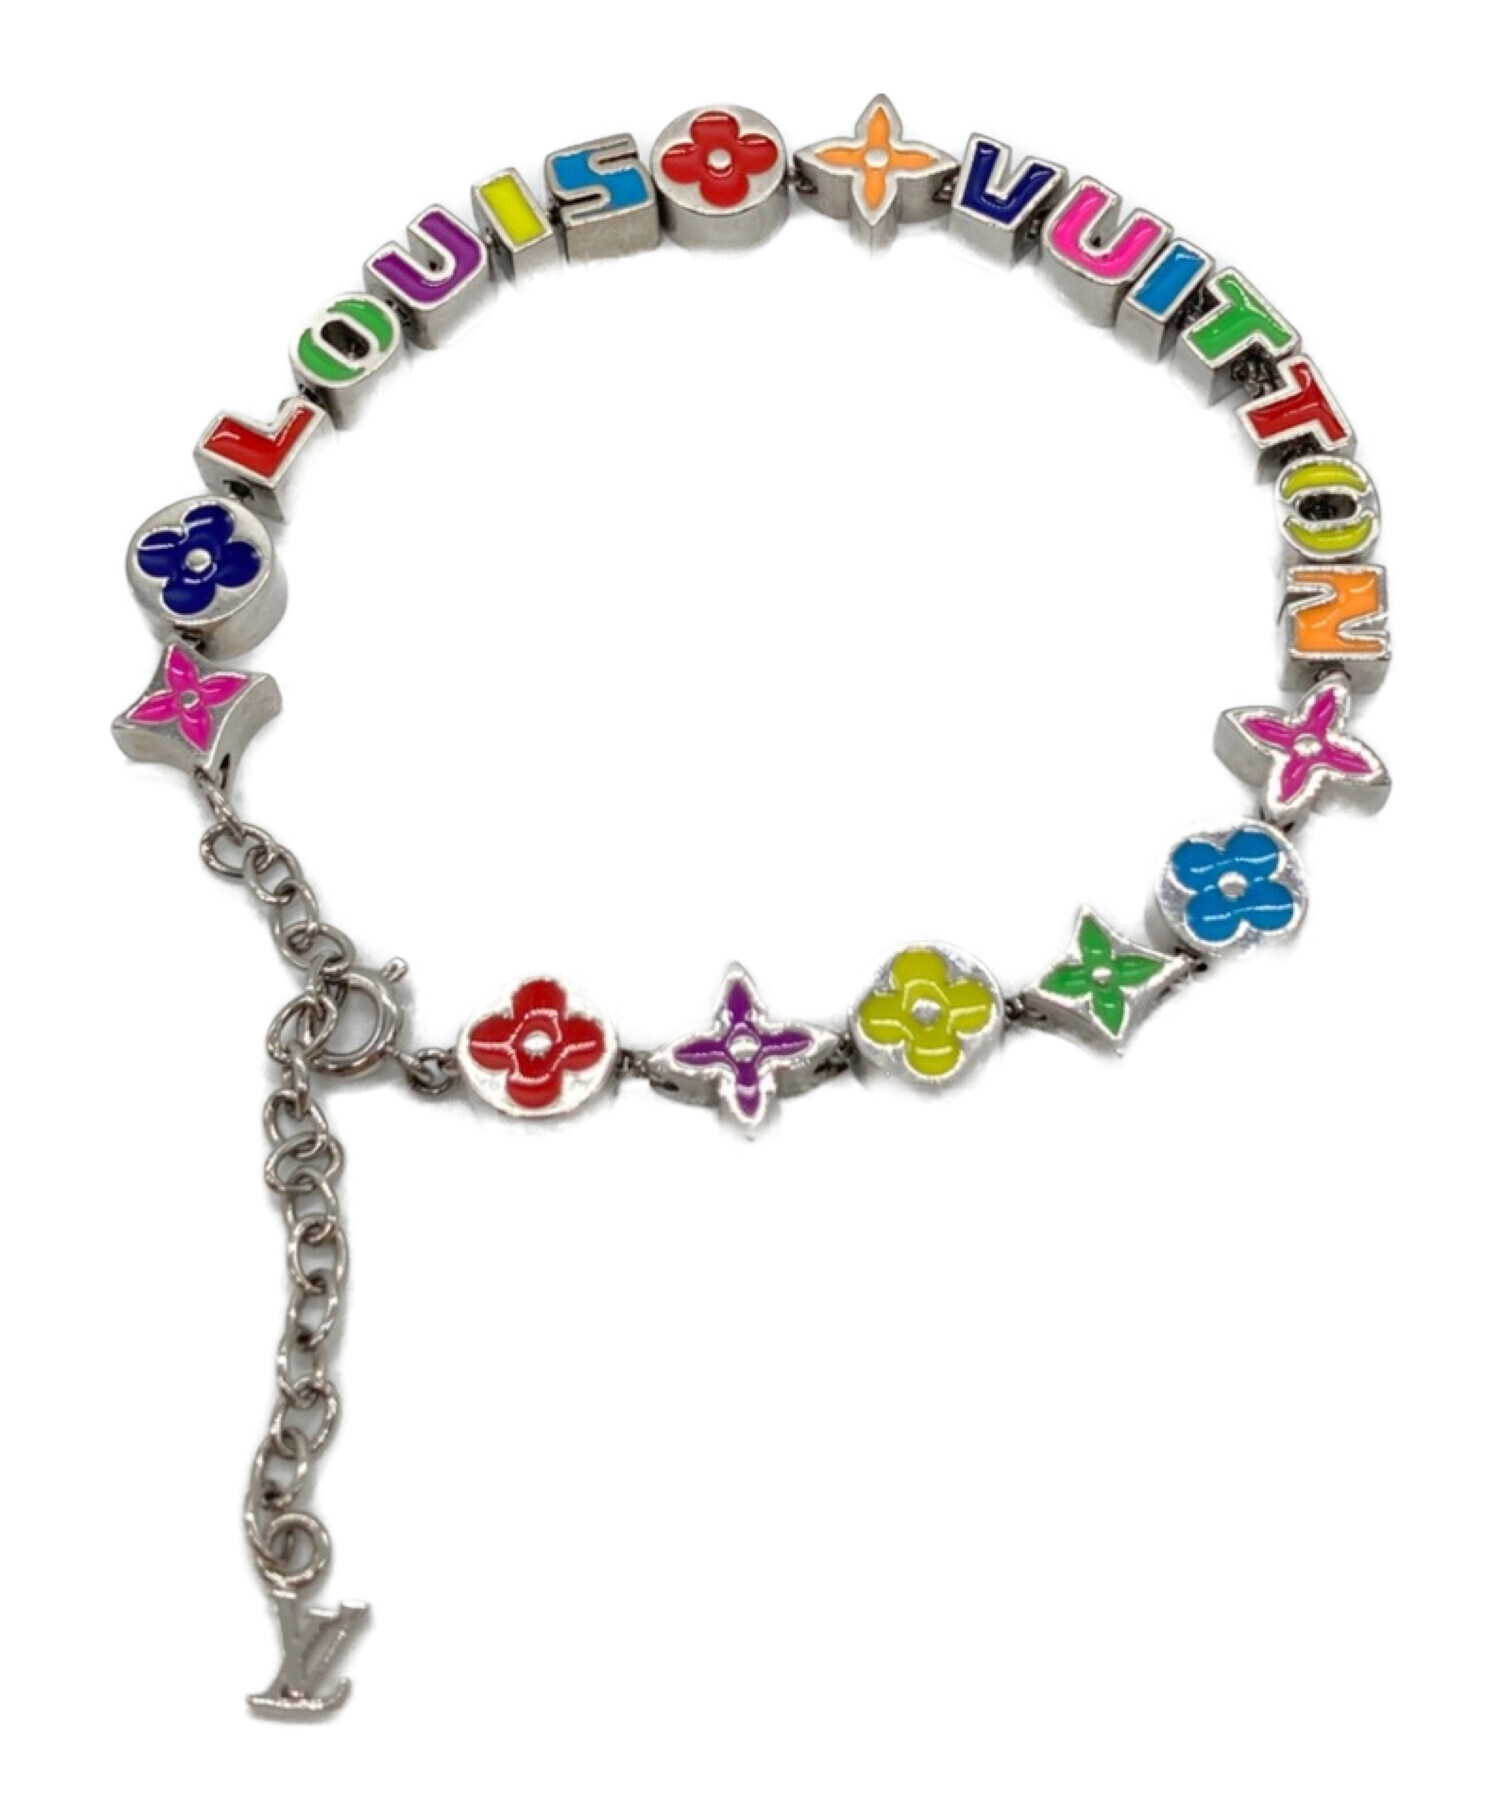 Louis Vuitton Monogram Party Bracelet Silver Multicolor MP3282